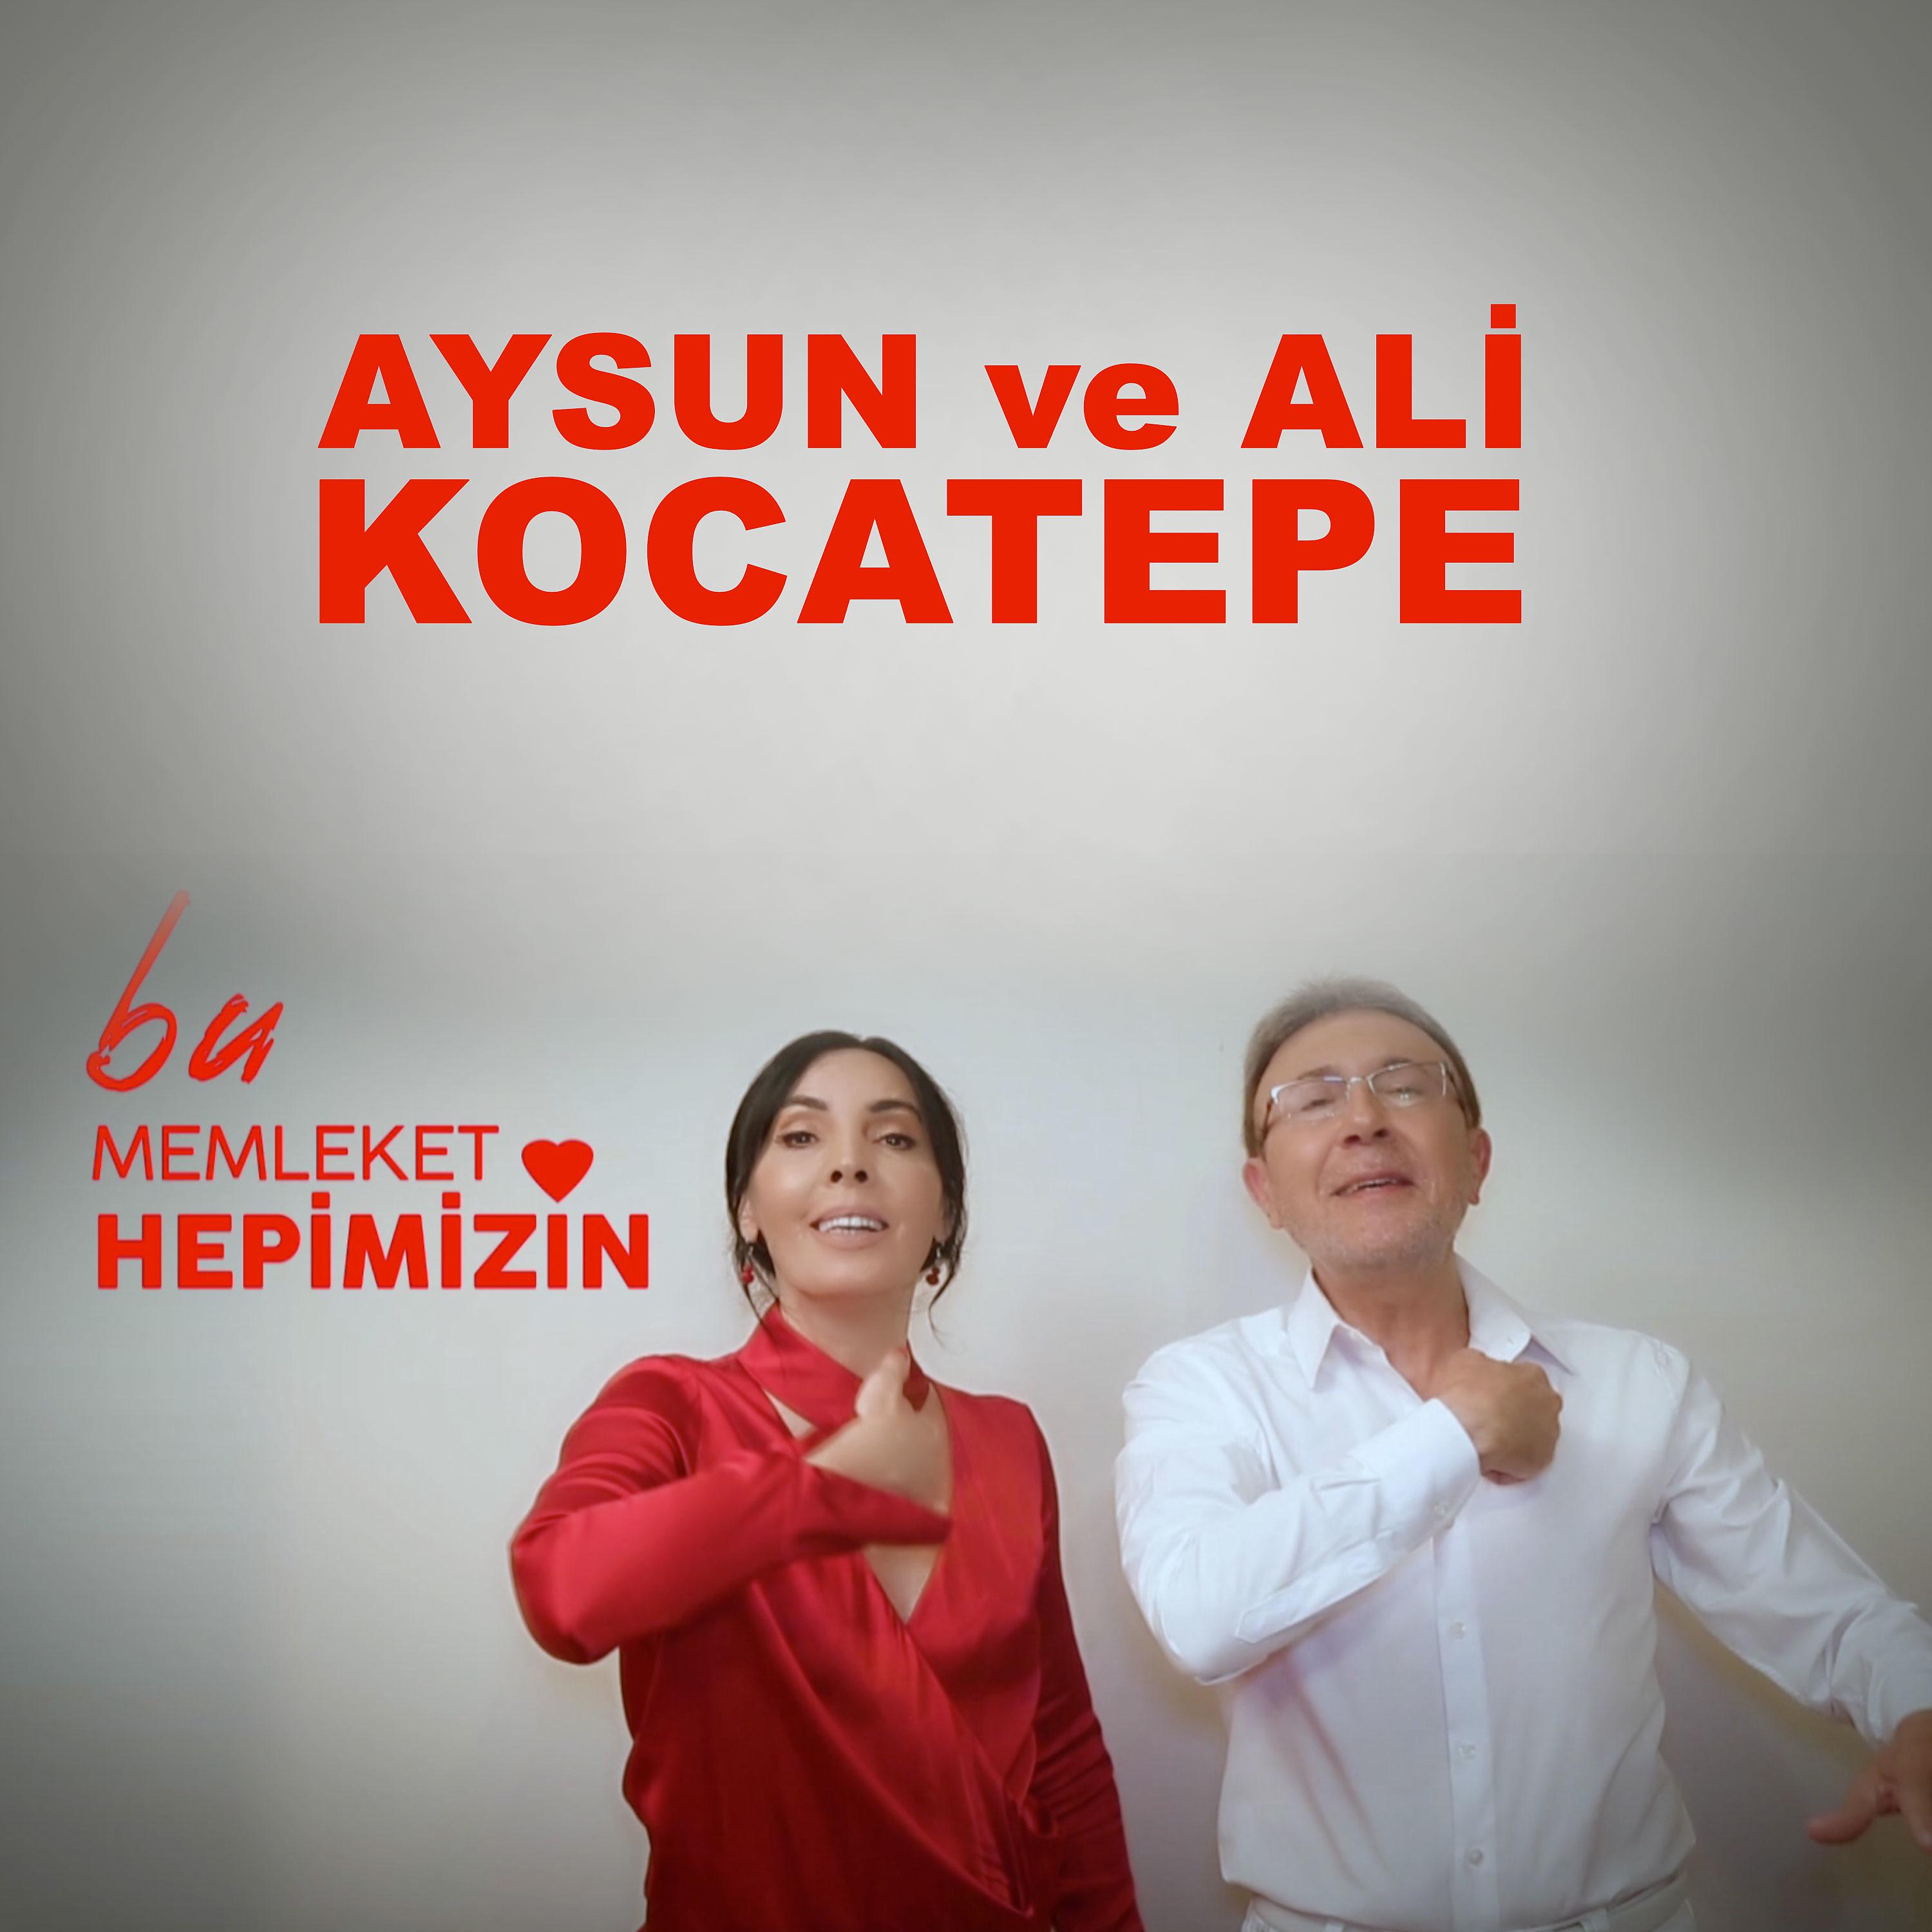 Постер альбома Bu Memleket Hepimizin